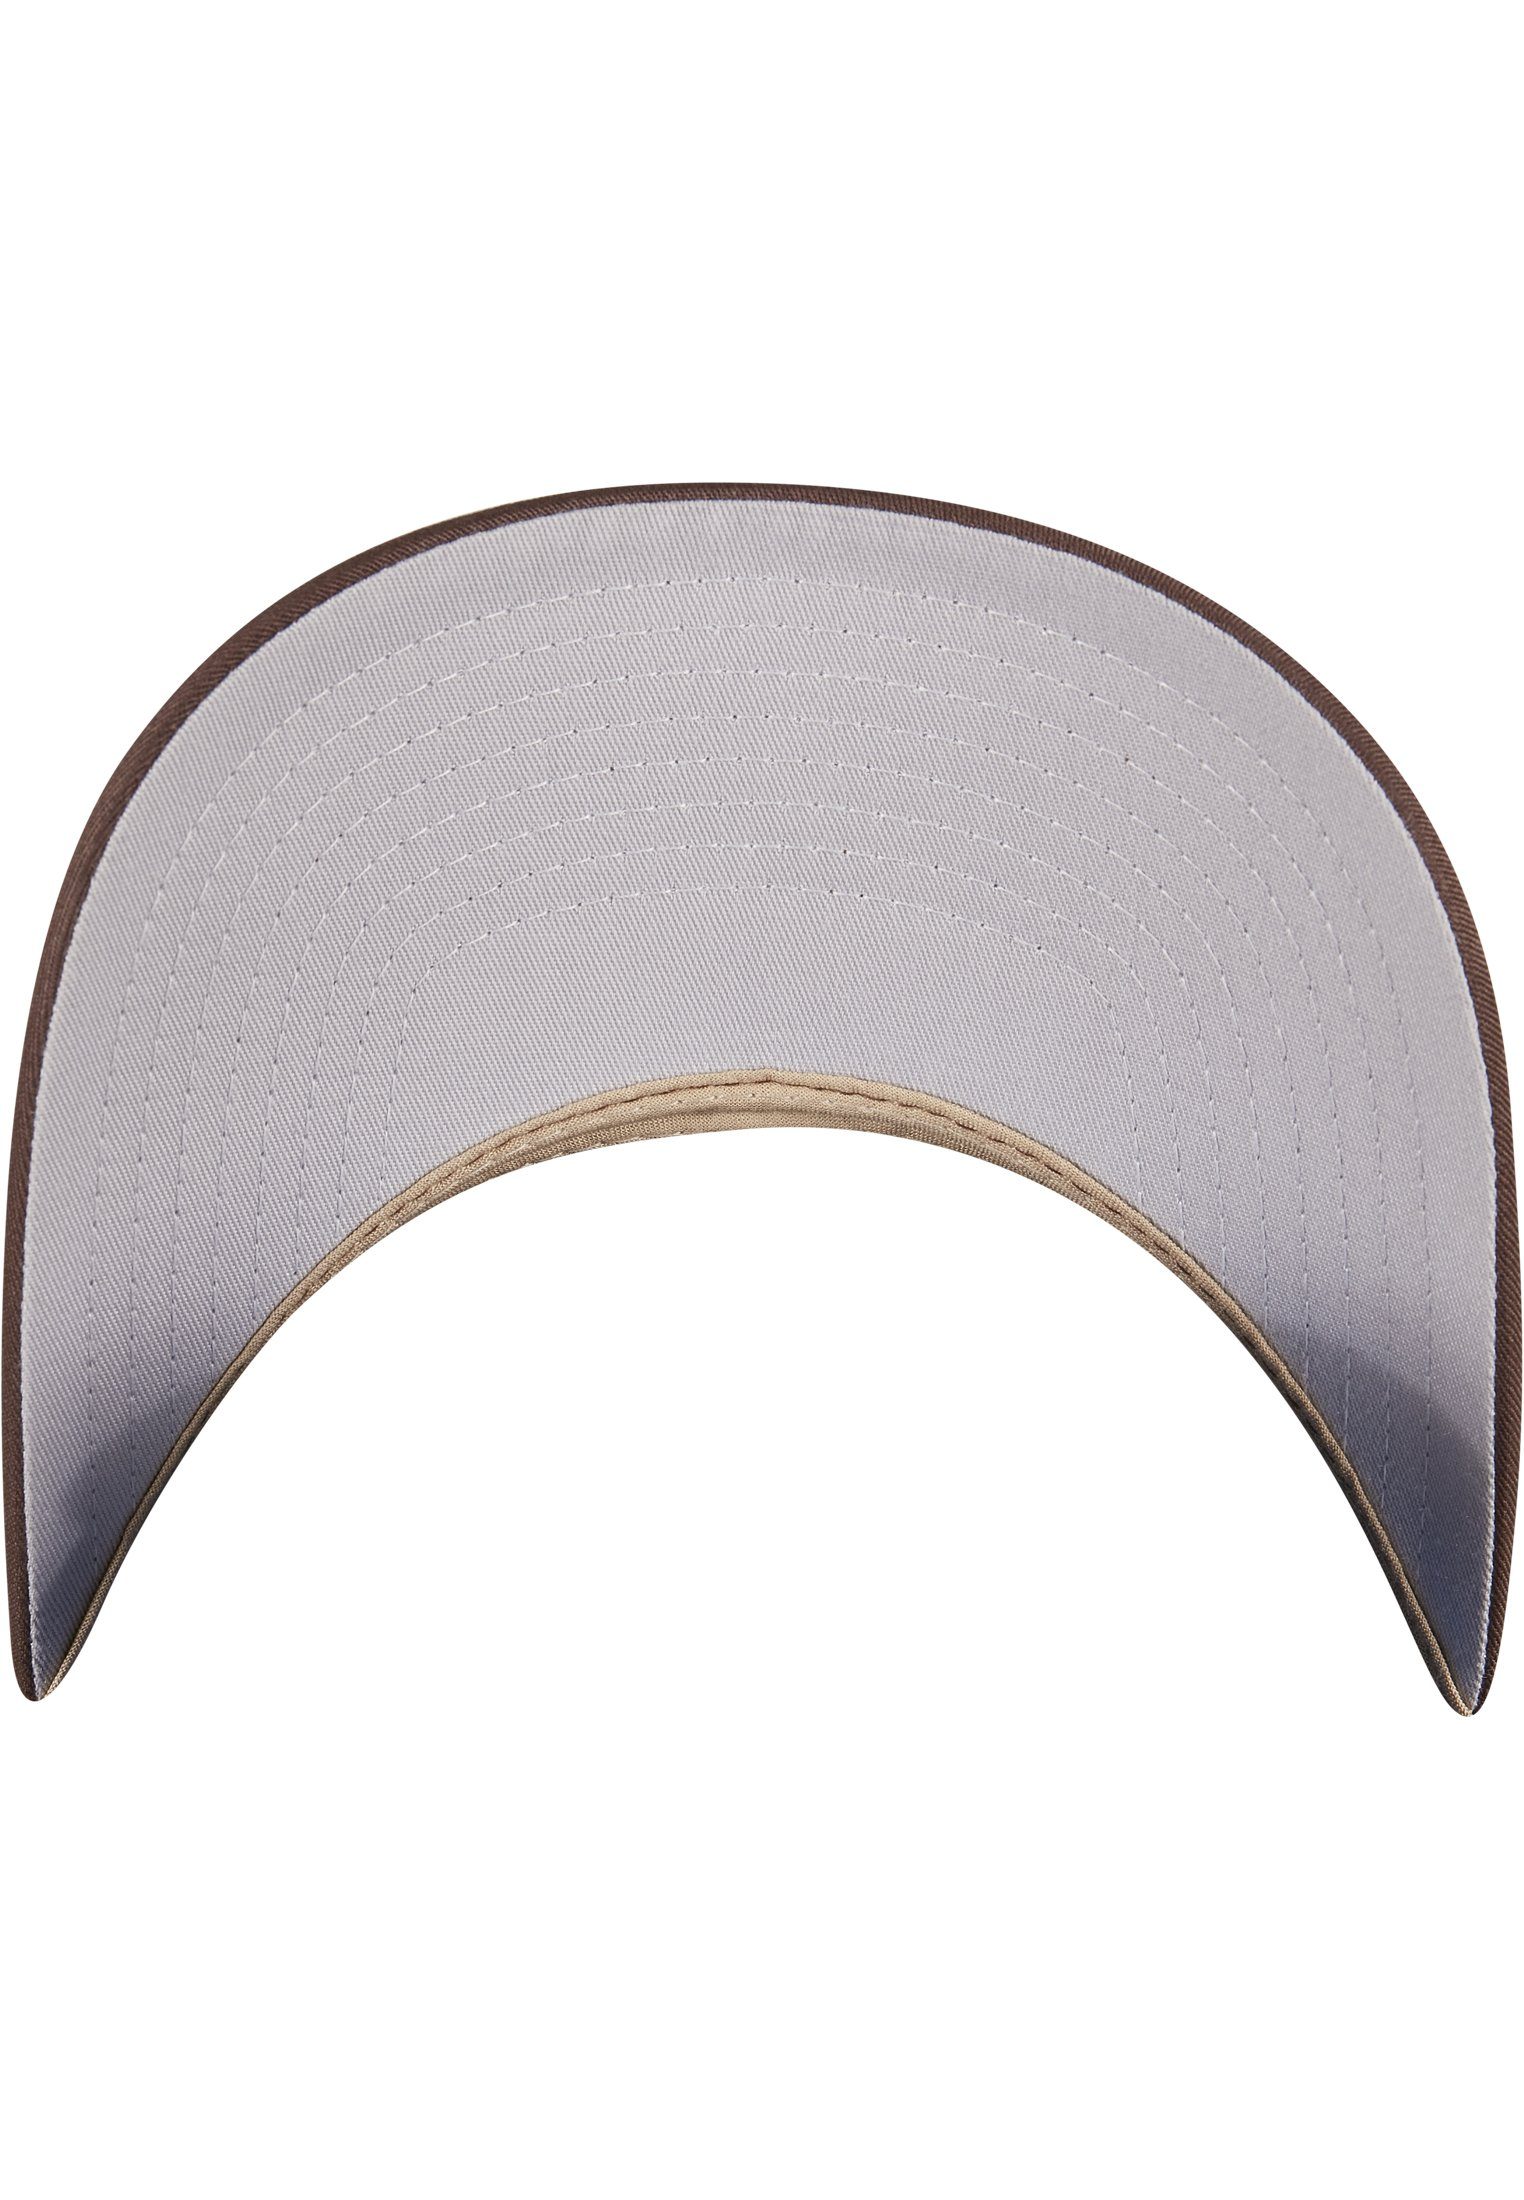 Flexfit Flex Cap Accessoires 360° brown/khaki Omnimesh 2-Tone Cap